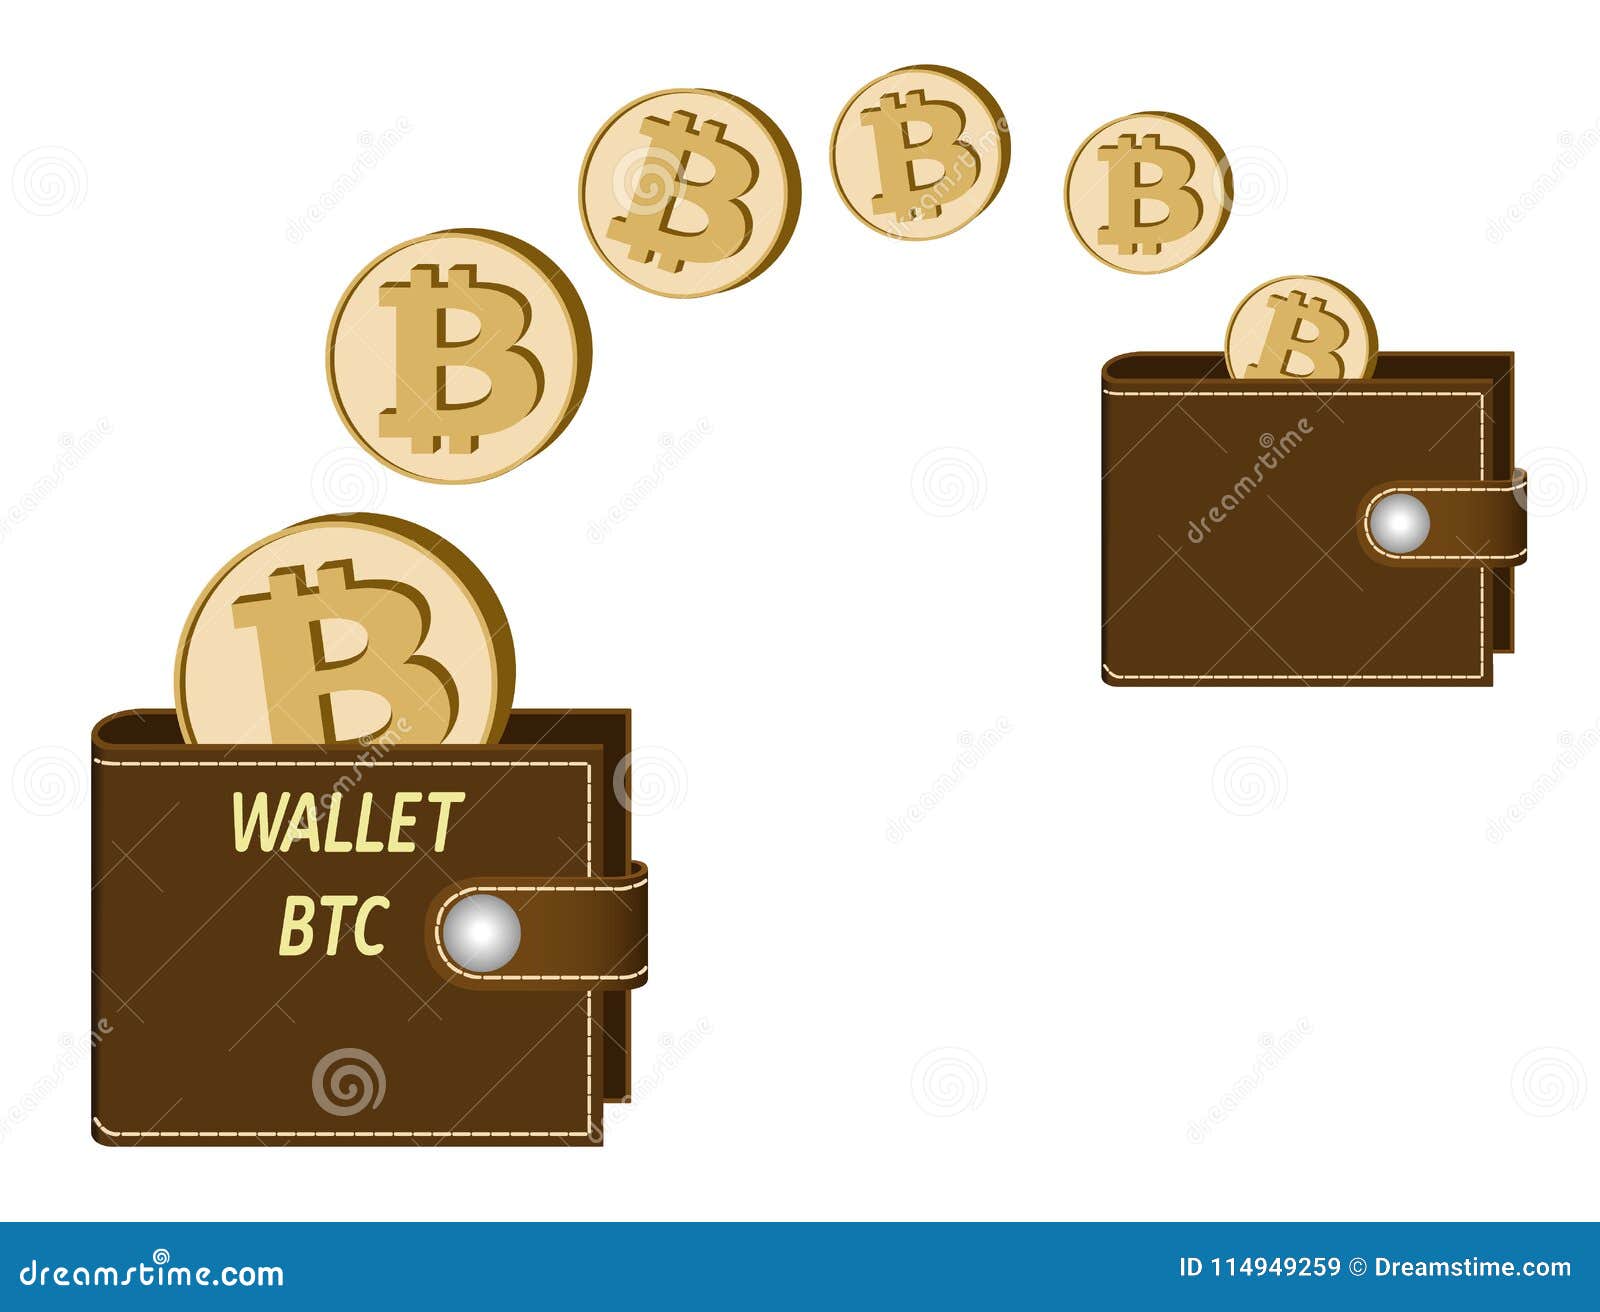 One wallet bitcoin 240000 рублей в тенге